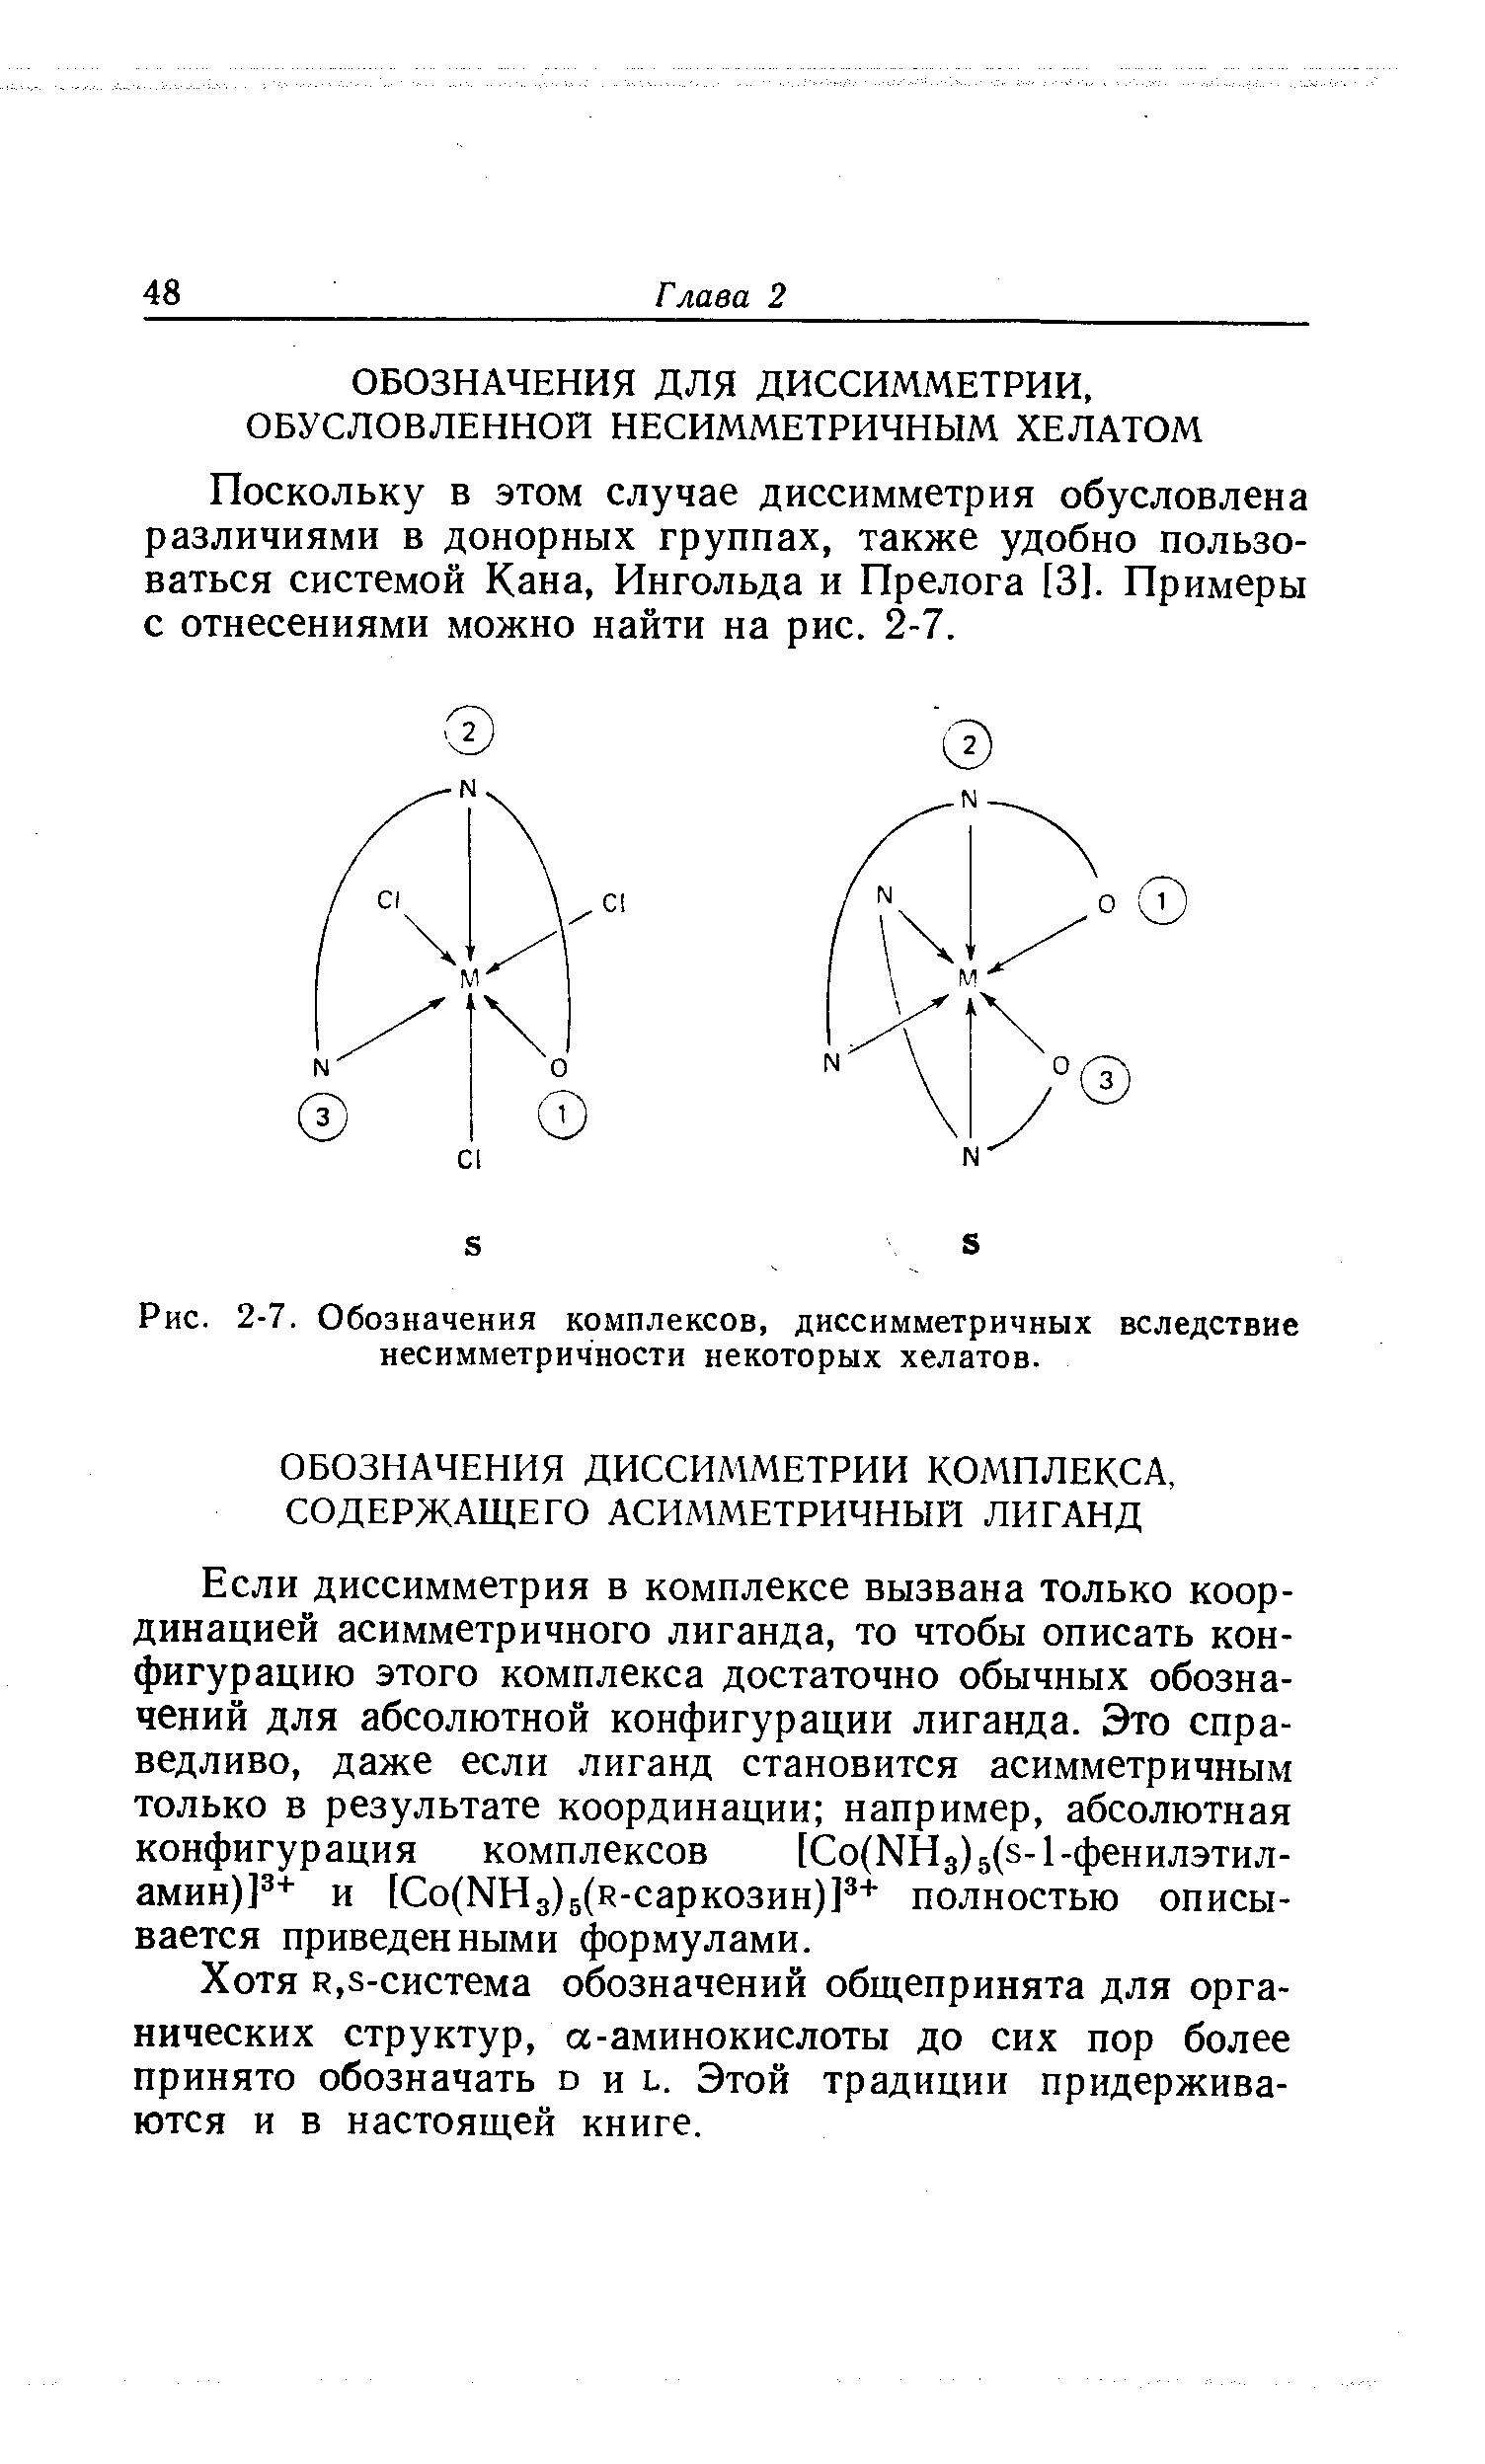 Если диссимметрия в комплексе вызвана только координацией асимметричного лиганда, то чтобы описать конфигурацию этого комплекса достаточно обычных обозначений для абсолютной конфигурации лиганда. Это справедливо, даже если лиганд становится асимметричным только в результате координации например, абсолютная конфигурация комплексов [Со(КНз)5(з-1-фенилэтил-амин)] и [Со(МНз)5(н-саркозин)Р+ полностью описывается приведенными формулами.